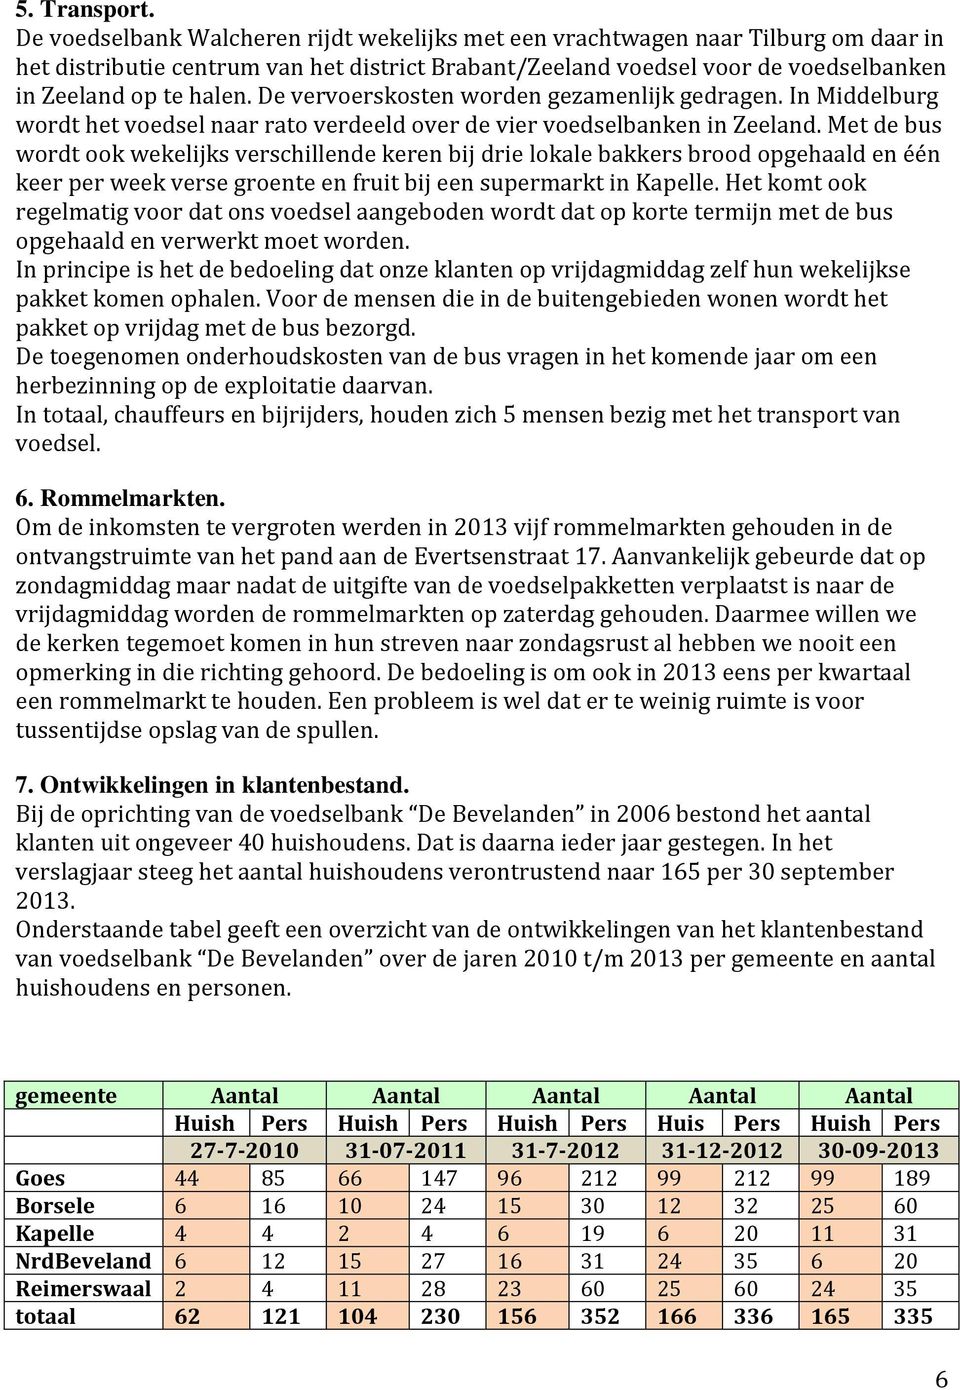 De vervoerskosten worden gezamenlijk gedragen. In Middelburg wordt het voedsel naar rato verdeeld over de vier voedselbanken in Zeeland.